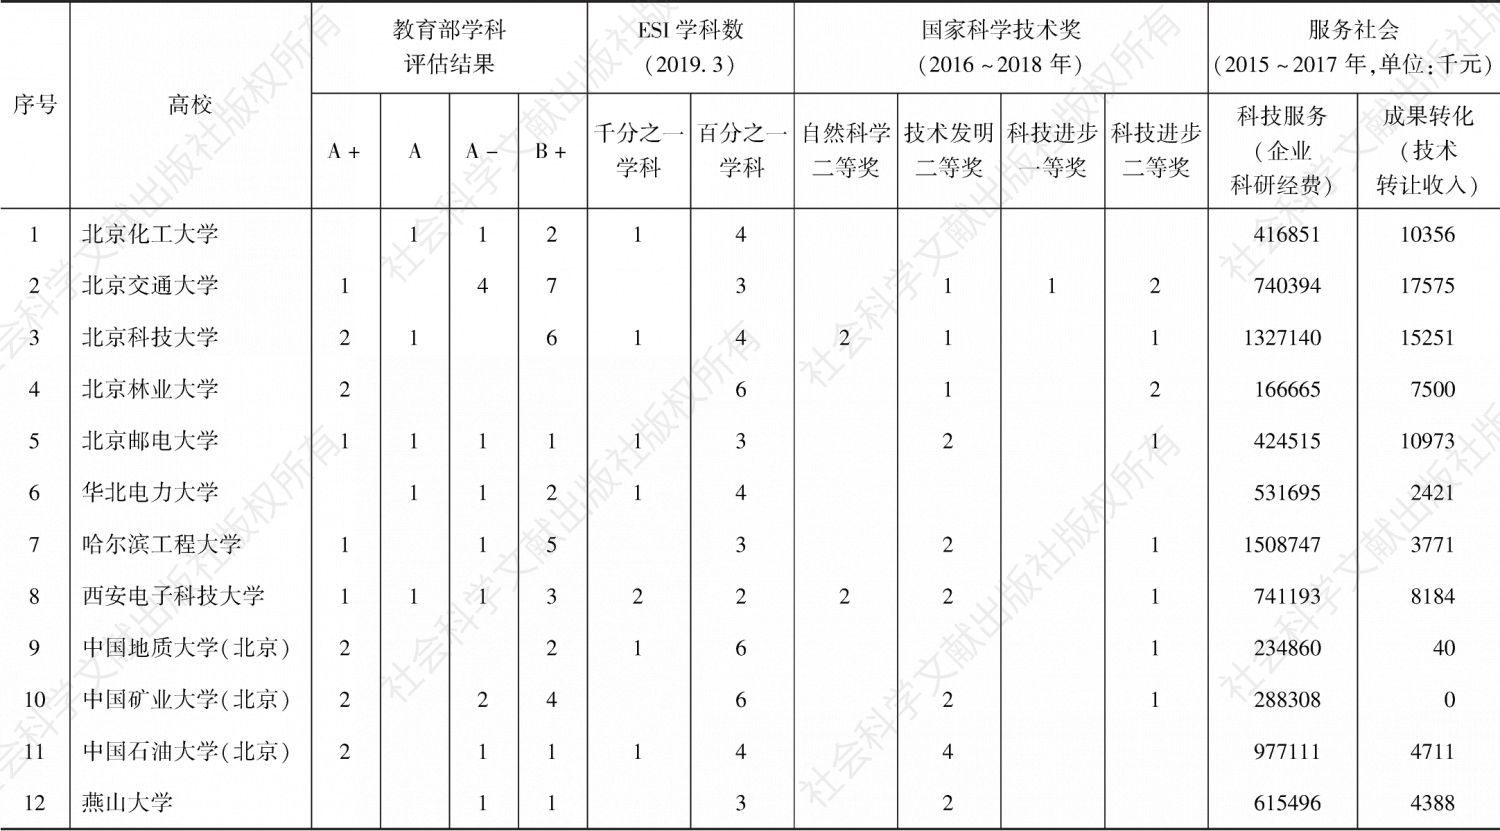 附表 北京高科联盟高校“双一流”建设绩效评价原始数据统计